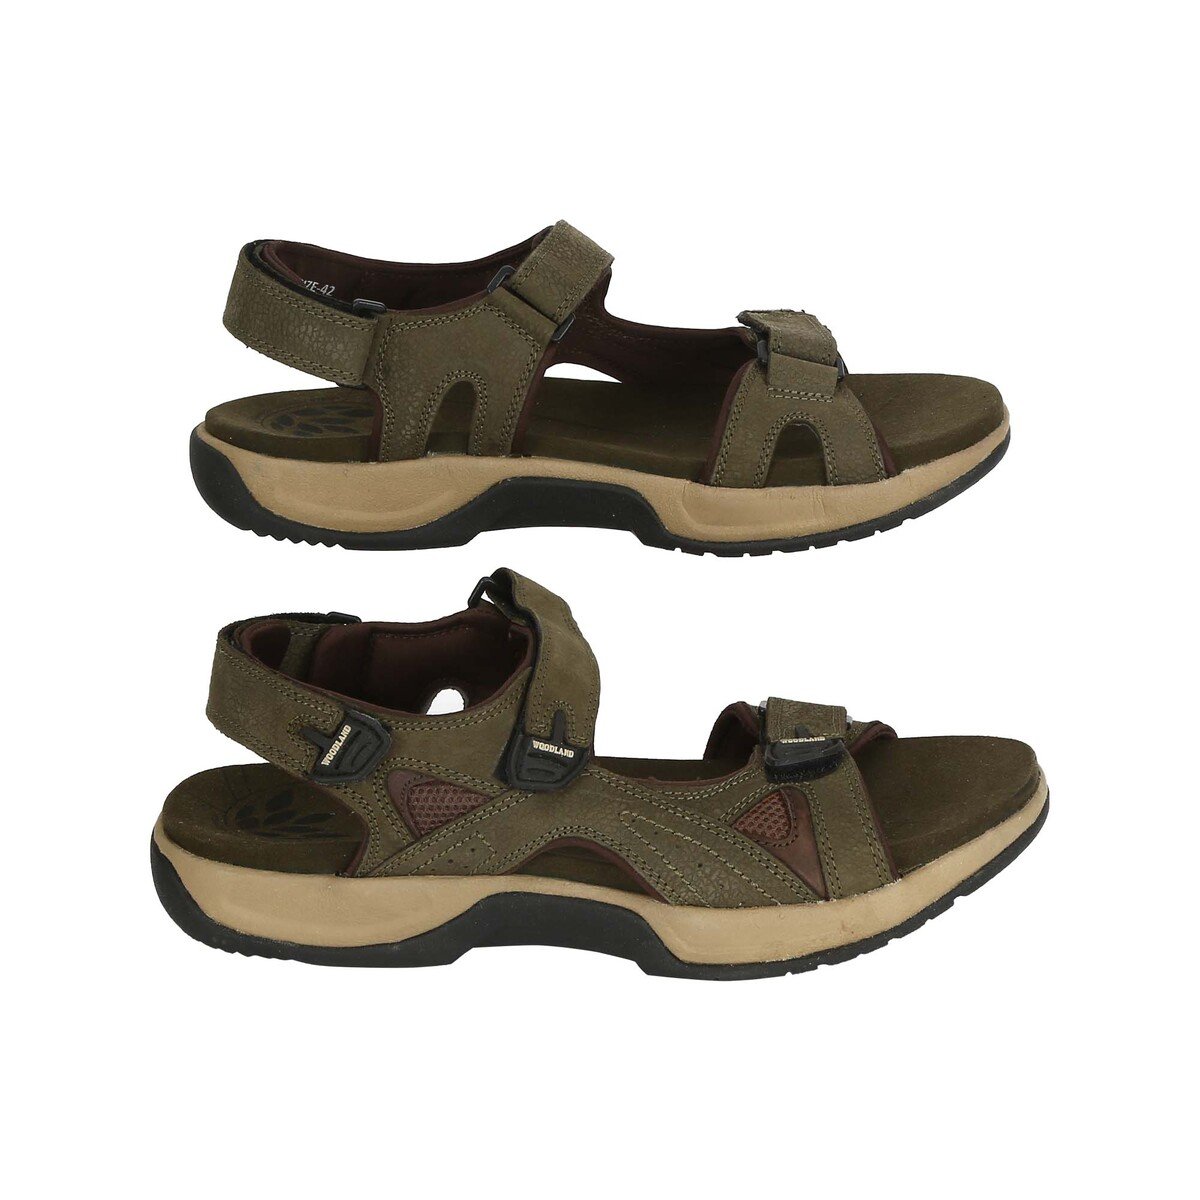 Woodland Men's Sandal GD1608114 Olive Green, 43